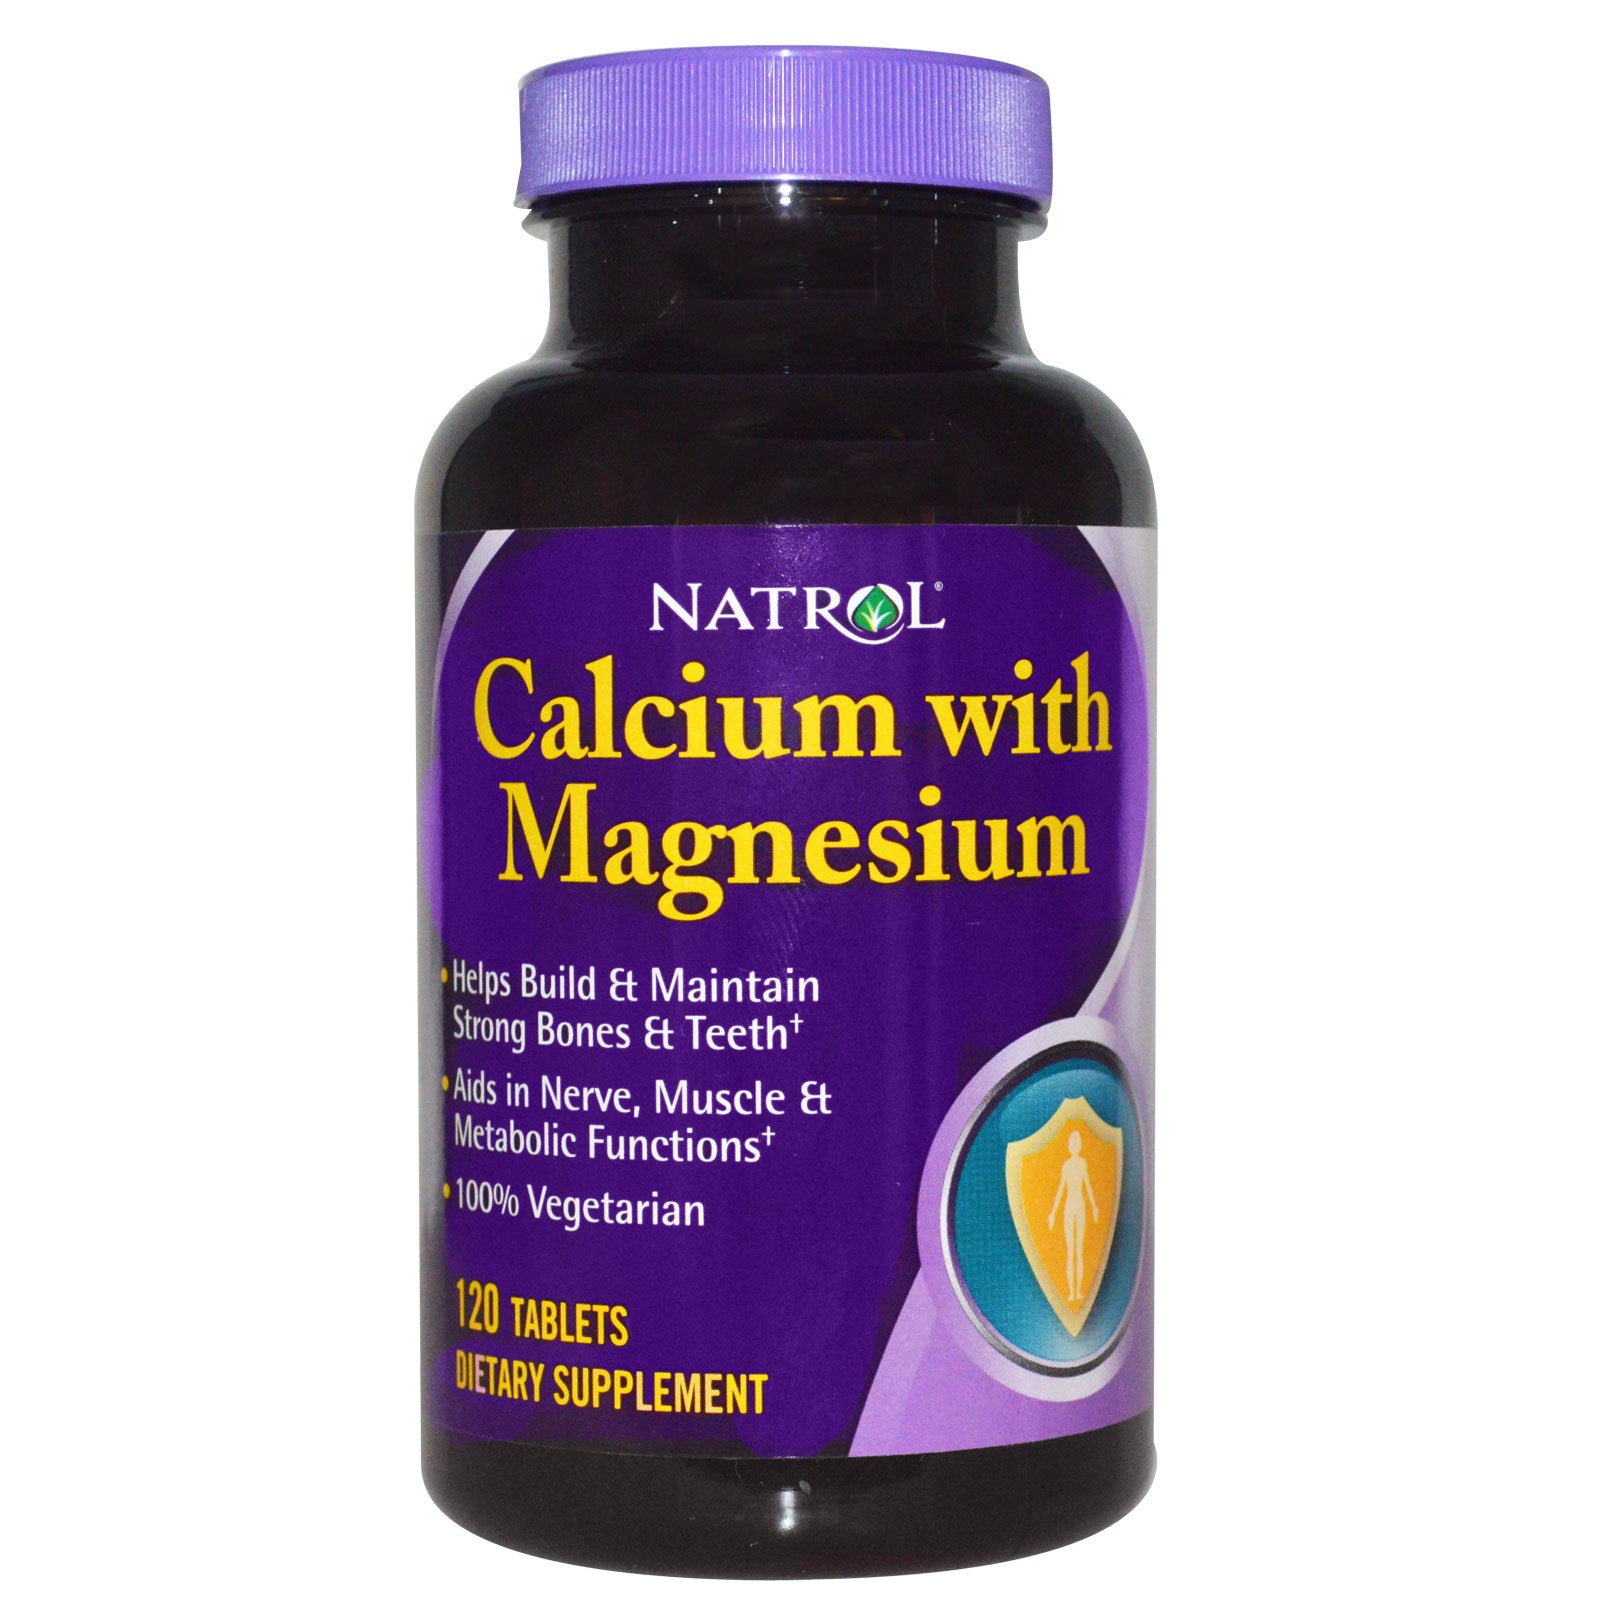 Natrol Calcium with Magnesium